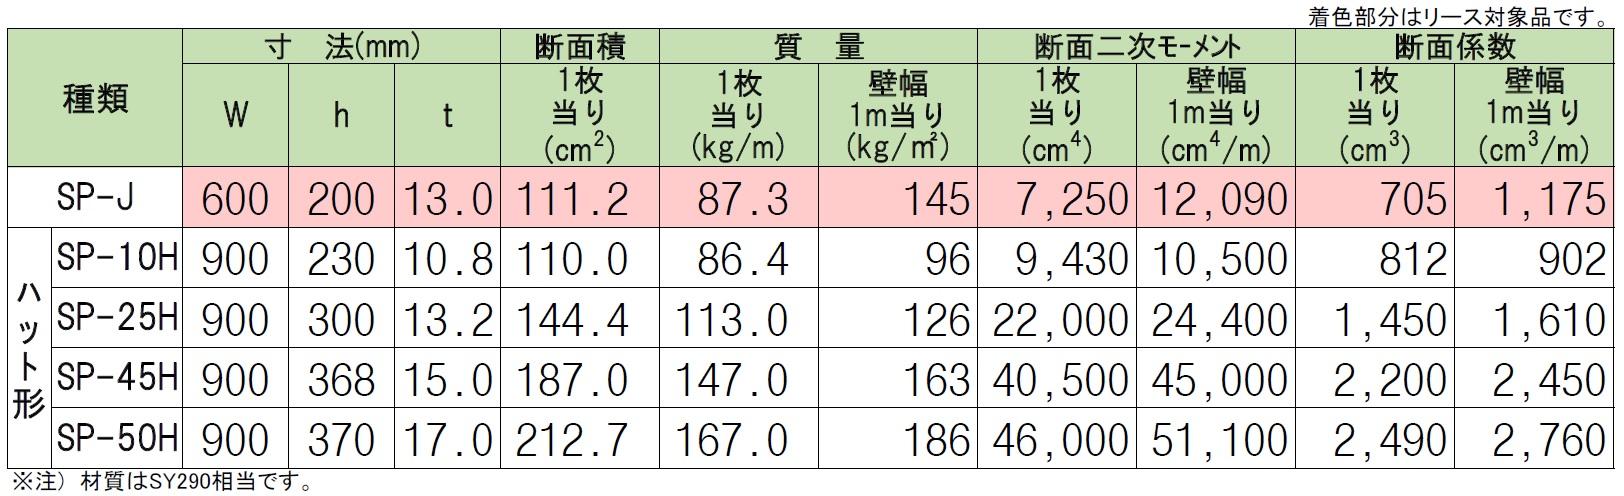 https://ssl.motec-co.jp/service/file/%E6%96%AD%E9%9D%A2%E6%80%A7%E8%83%BD%E8%A1%A810-1.jpg